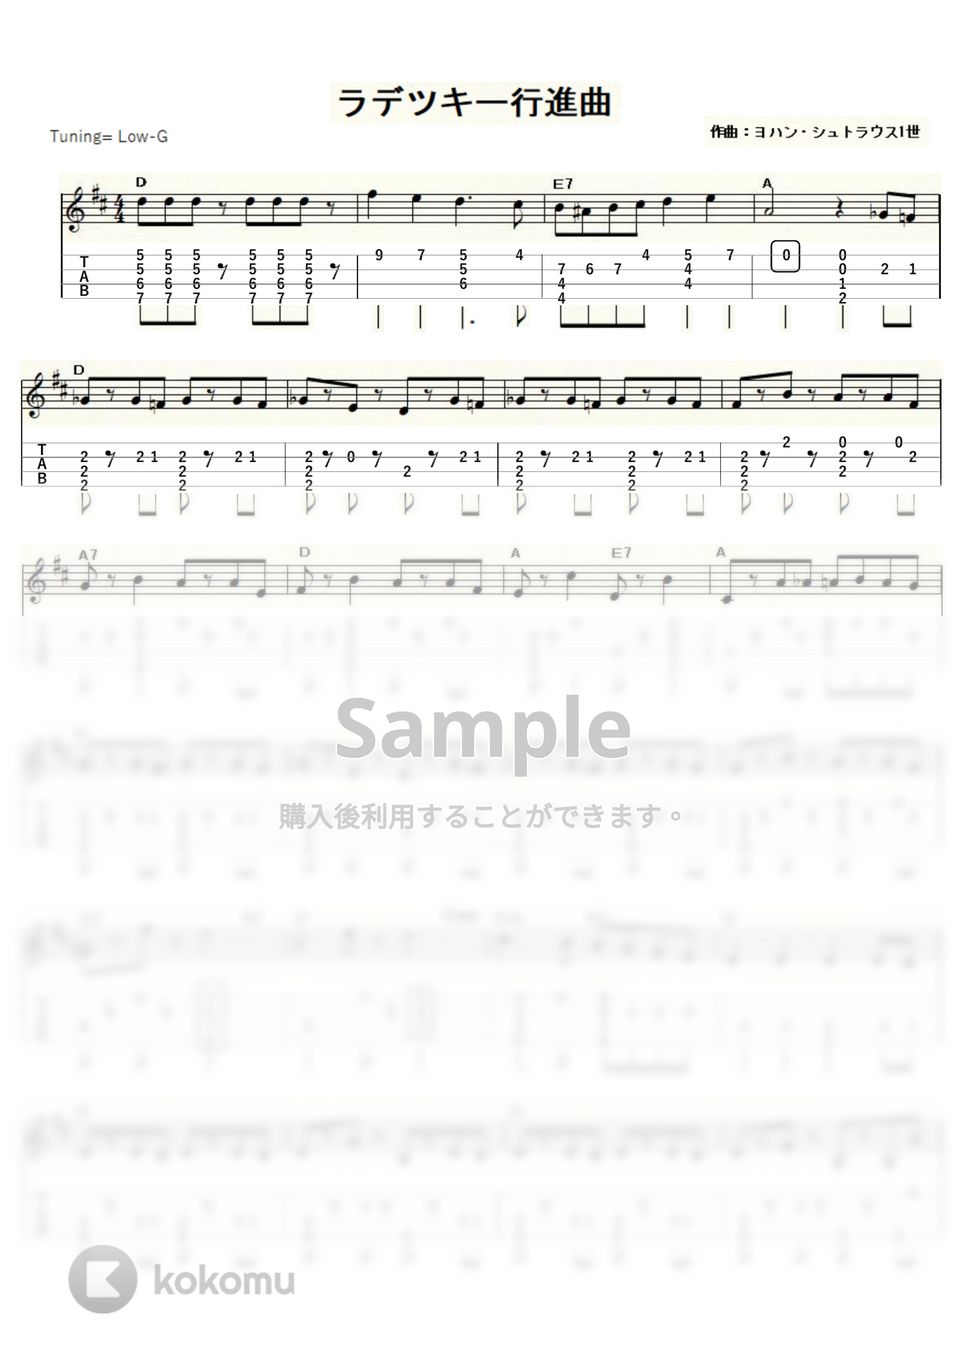 ヨハン・シュトラウス1世 - ラデツキー行進曲 (ｳｸﾚﾚｿﾛ / Low-G / 中～上級) by ukulelepapa